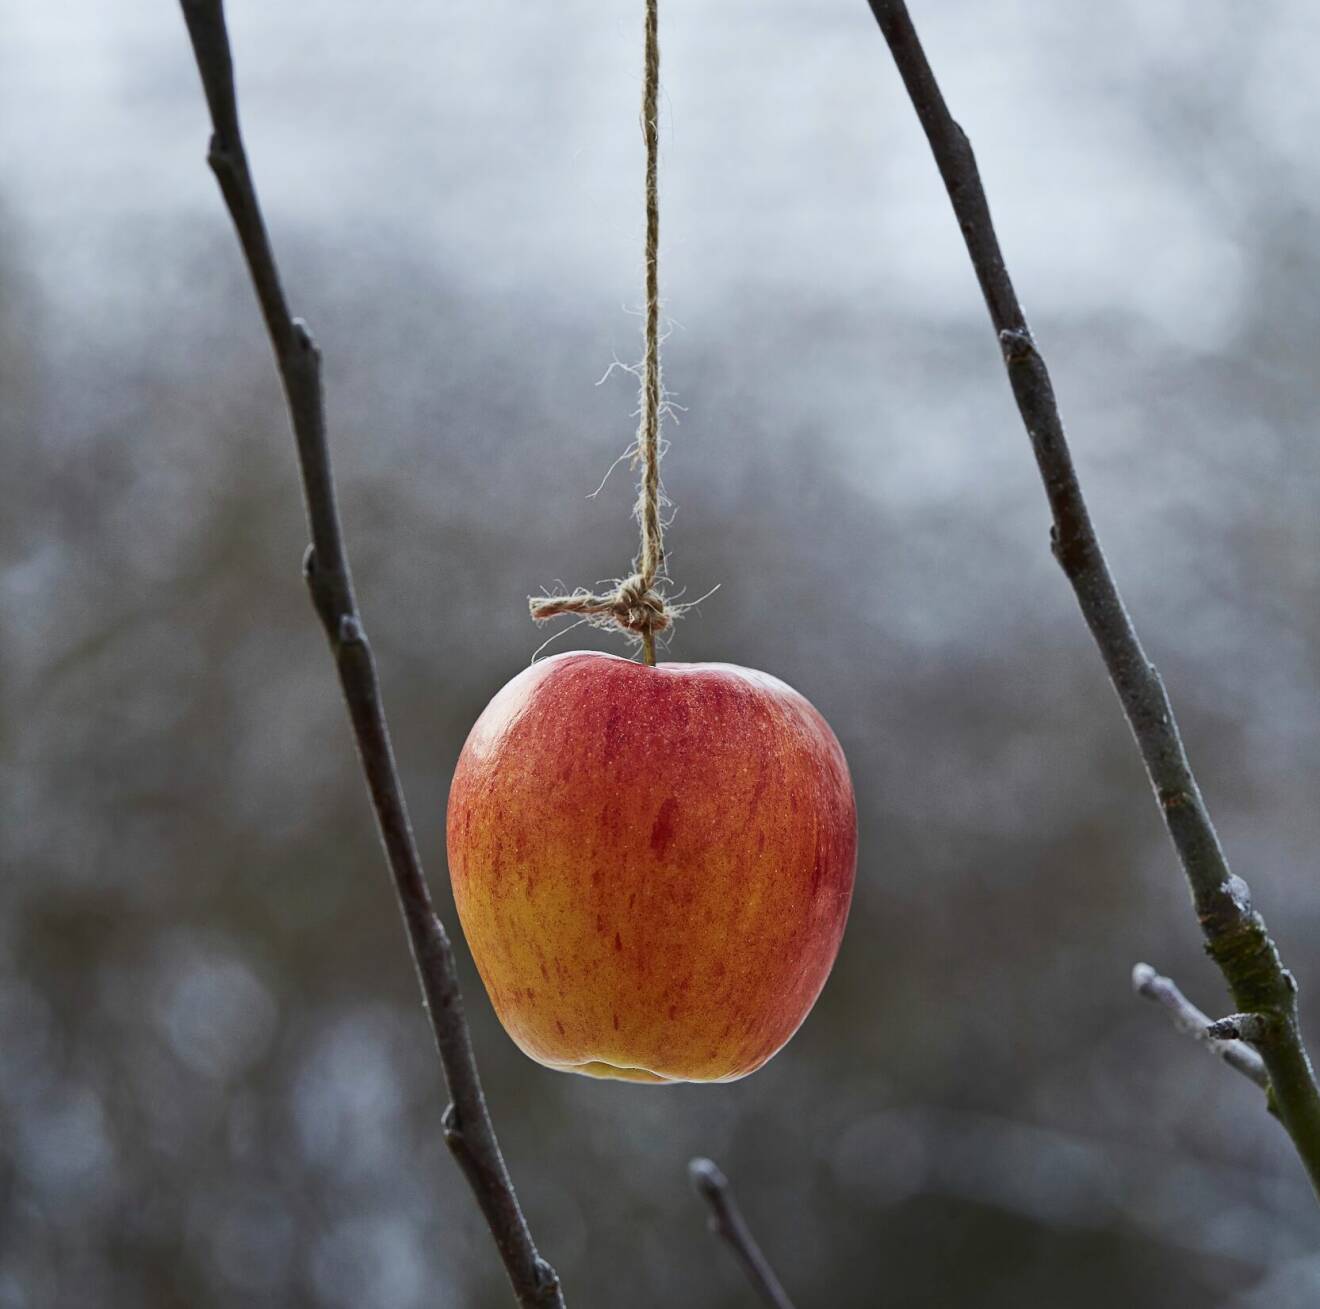 Knyt fast äpplen i snören och häng en bit upp i trädet, nära grenar som fåglarna kan sitta och äta från. Vill du göra koltrastarna lyckliga slänger du ut några äpplen på tomten också.